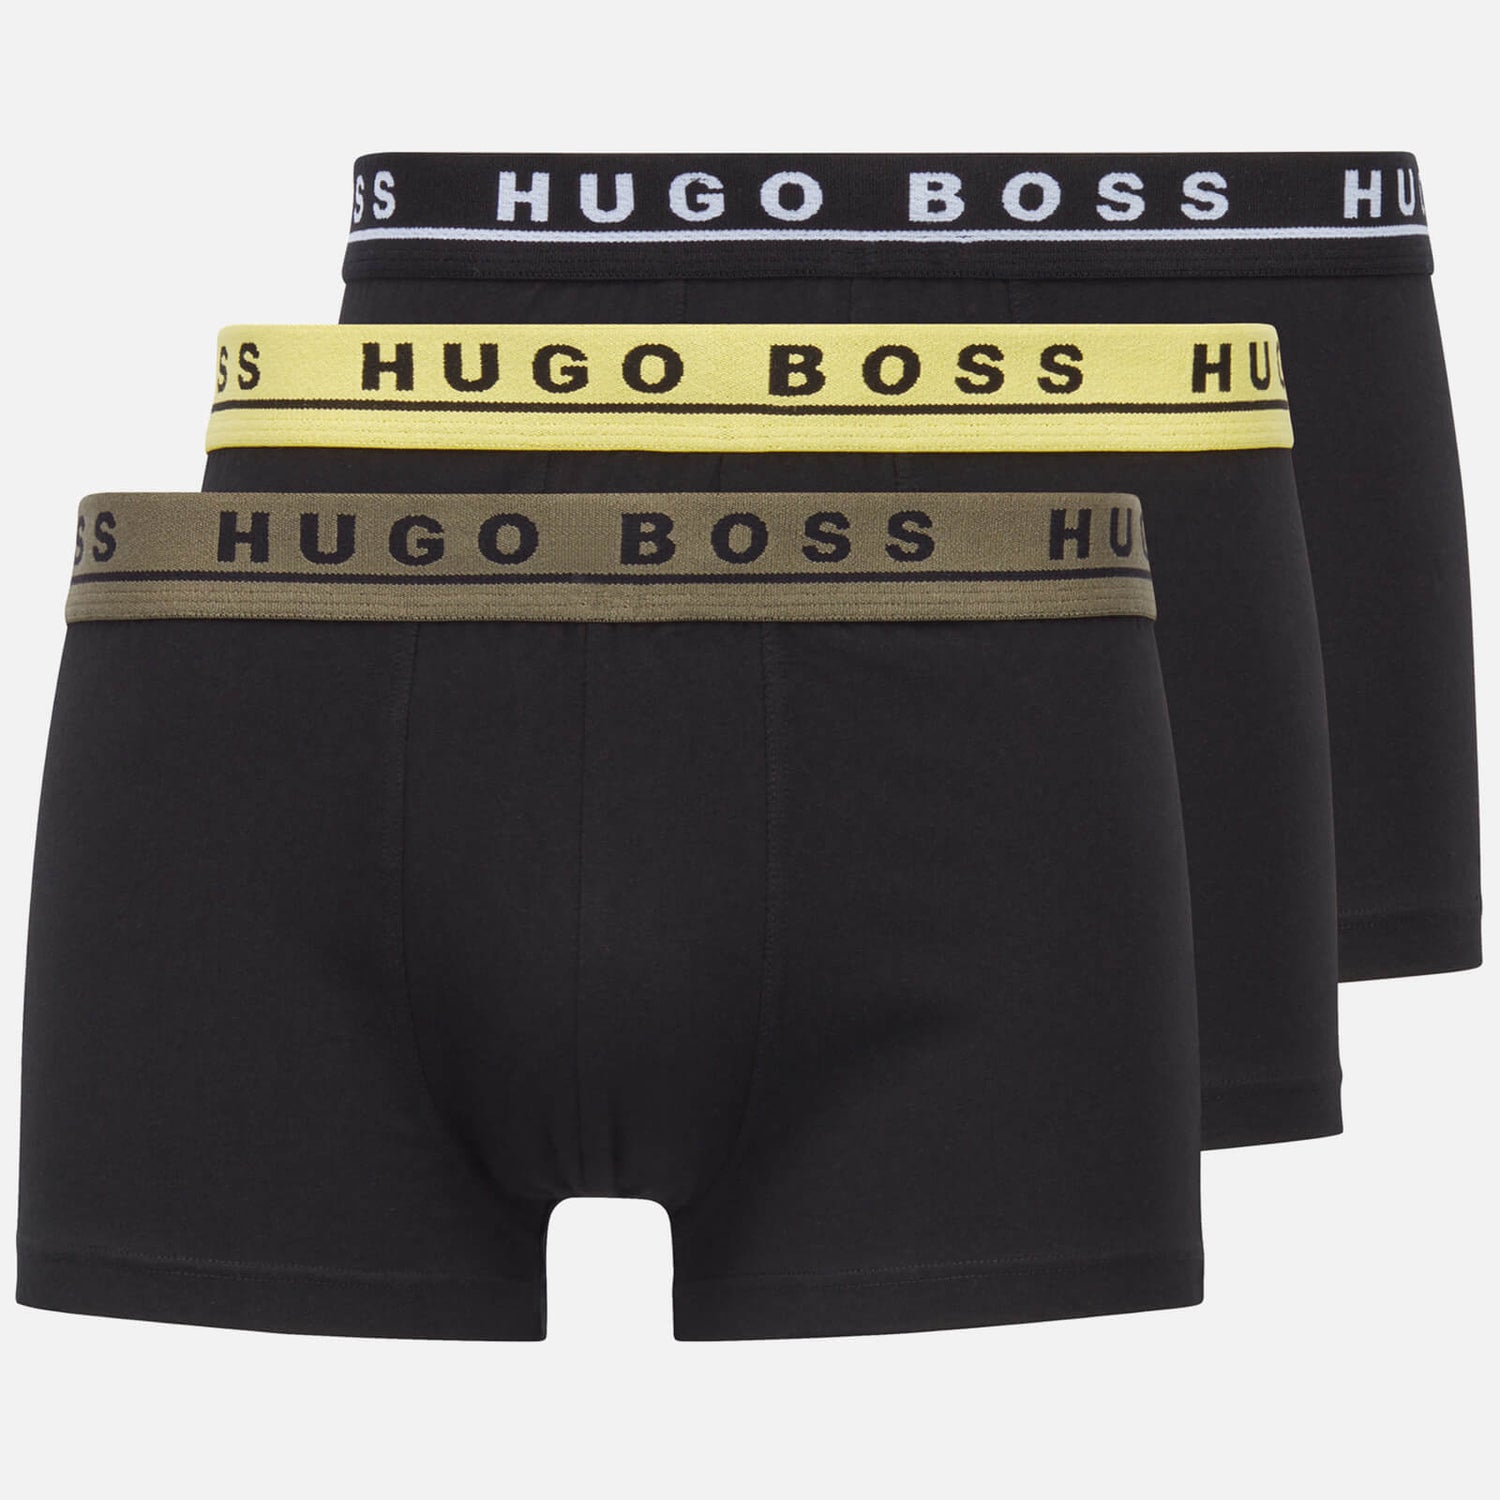 BOSS Bodywear Men's 3-Pack Contrast Waistband Trunks - Black/Multi - S